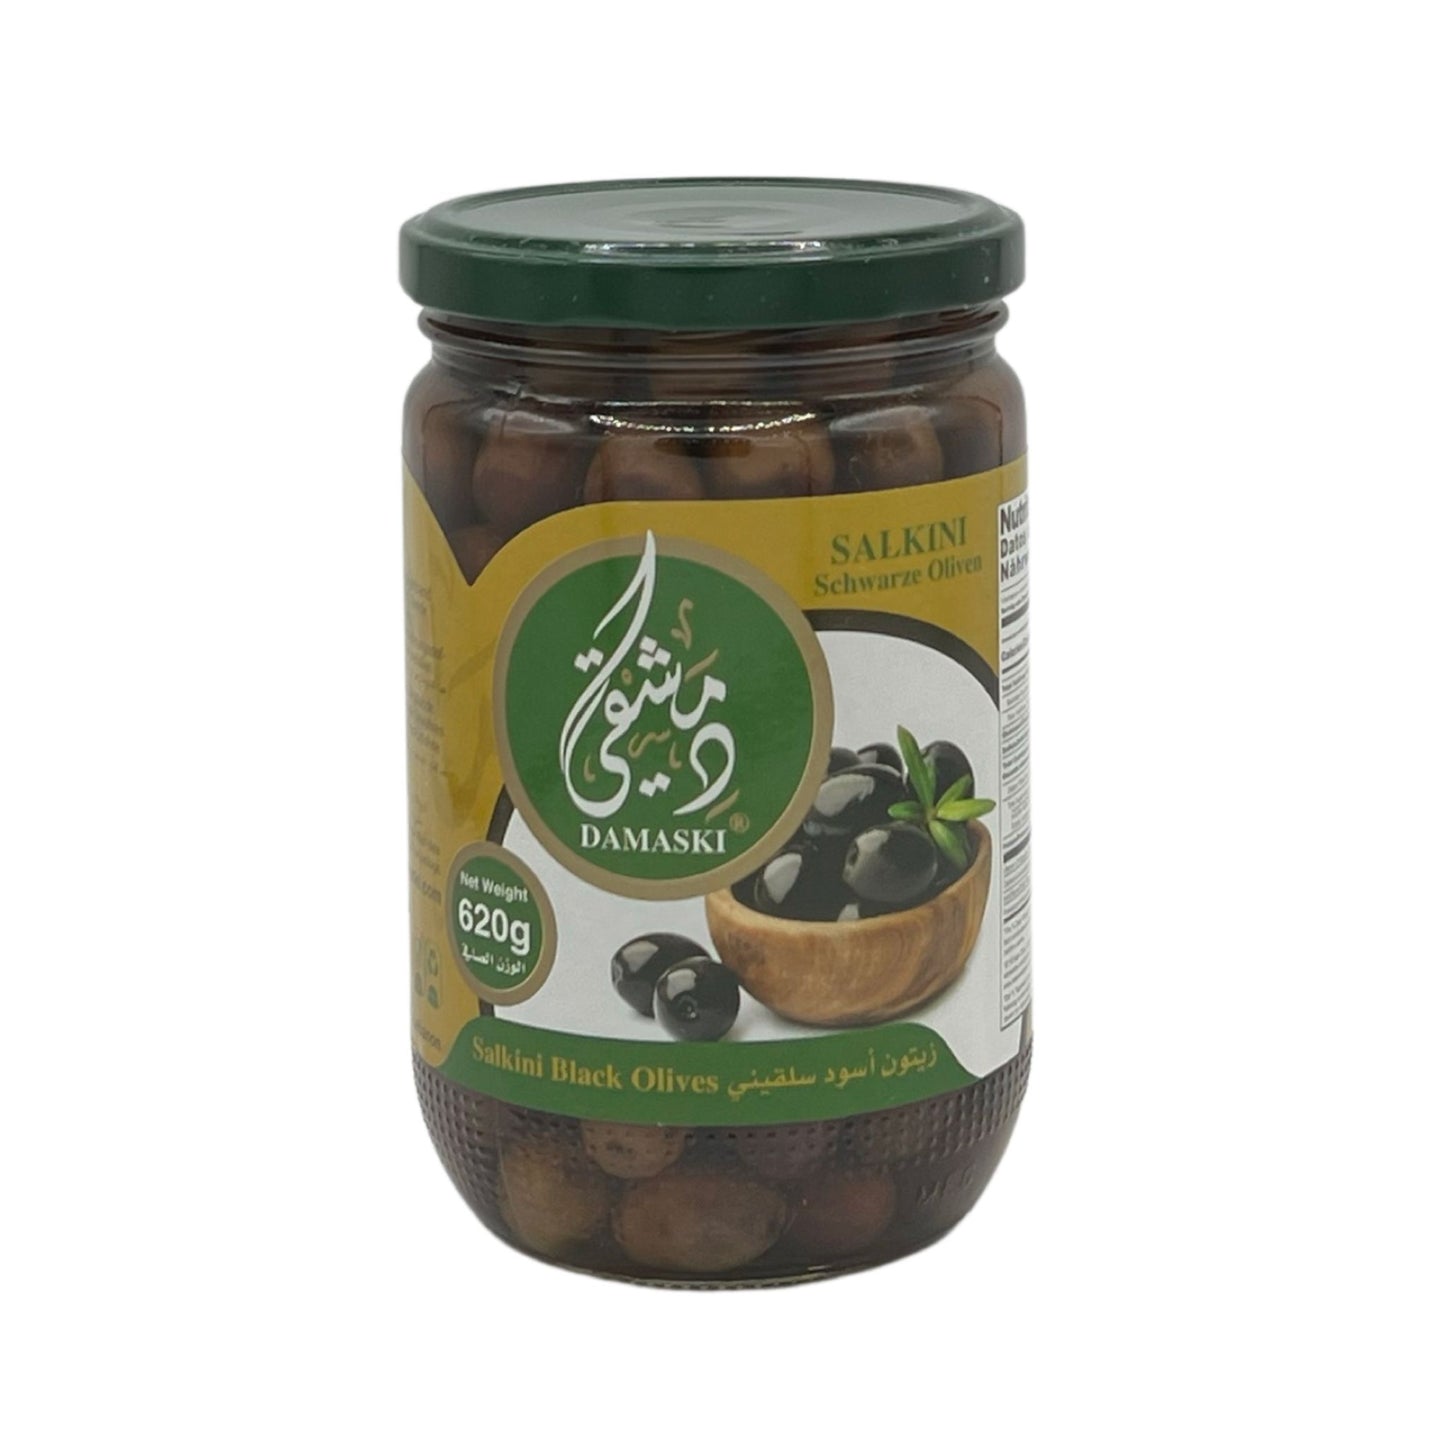 Damaski Black Olive Salkini 620 Grams